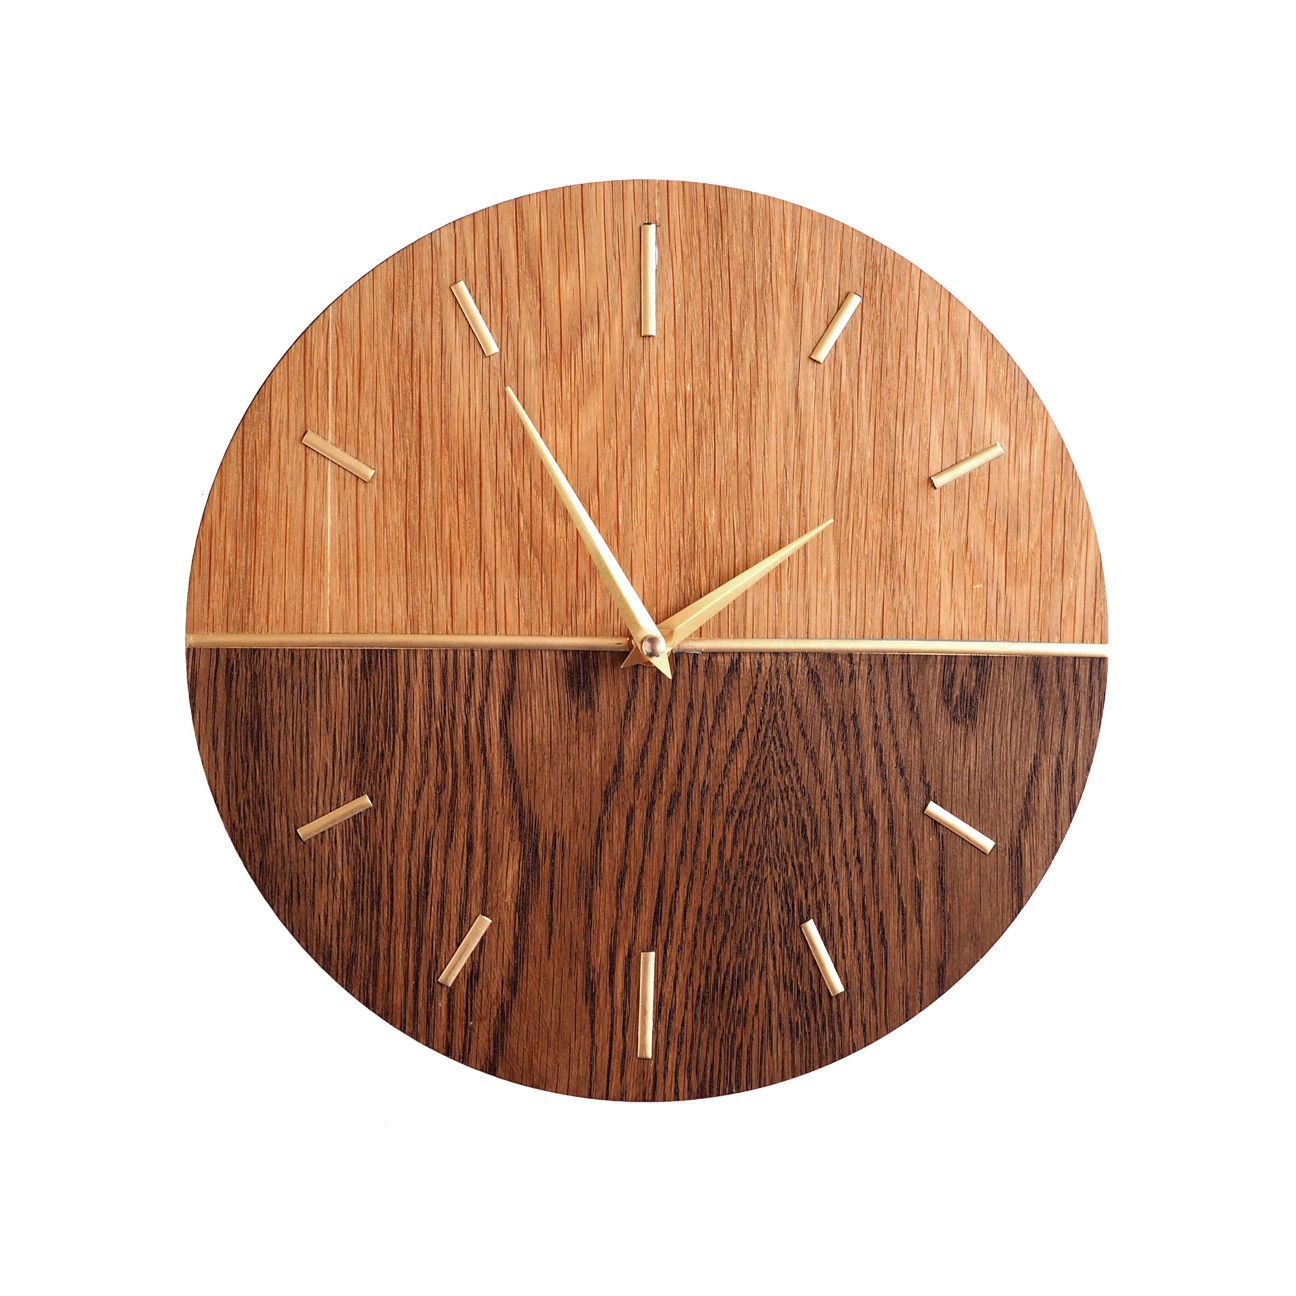 Настенные часы Roomton часы из дерева с отметками, коричневый